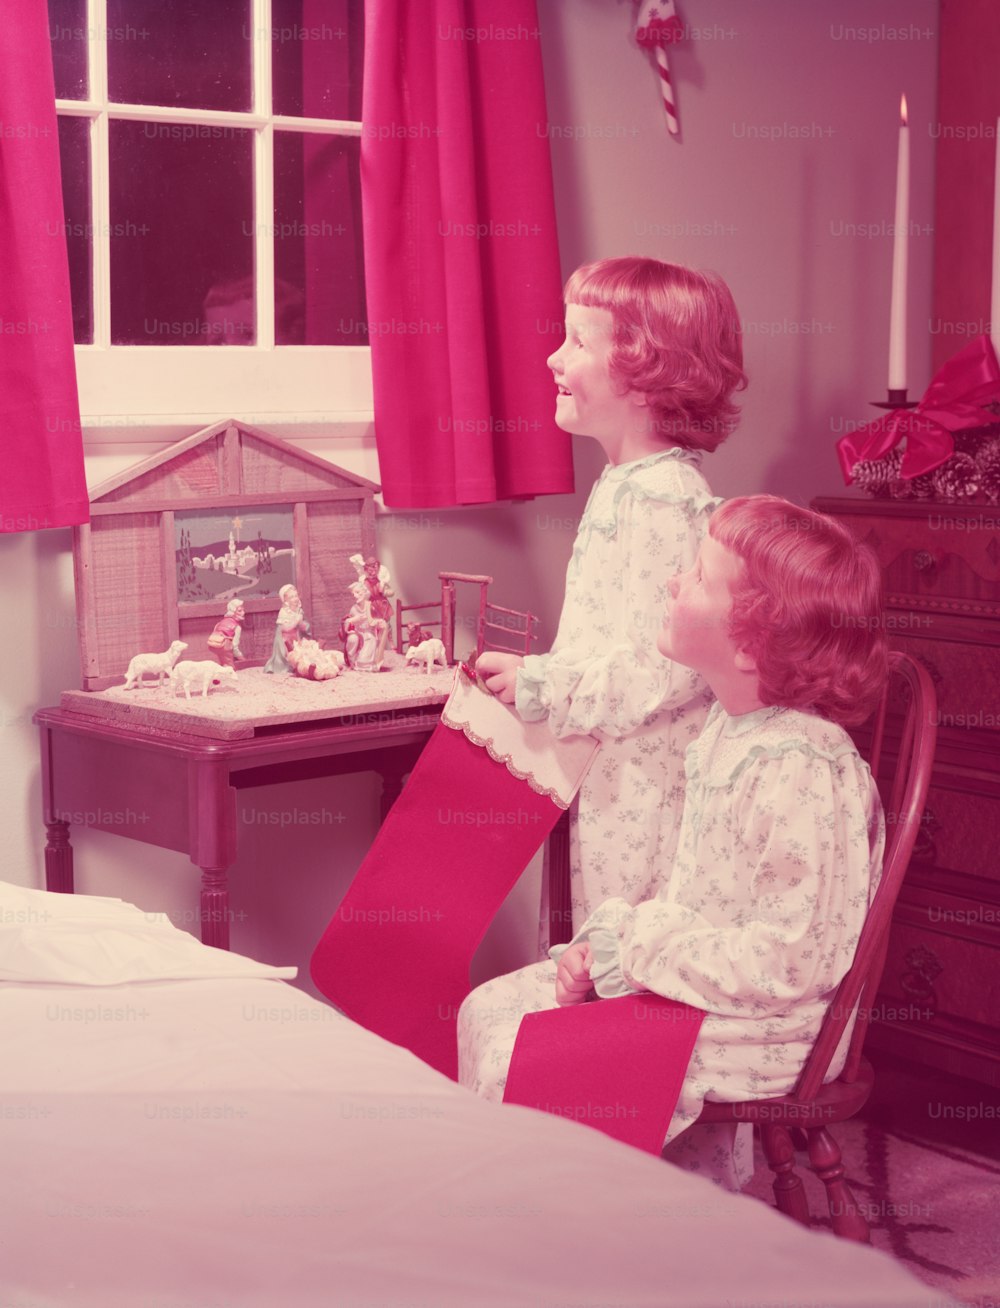 STATI UNITI - 1950 CIRCA: Ragazze gemelle che tengono calze di Natale, guardando fuori dalla finestra della camera da letto, presepe sul comodino.